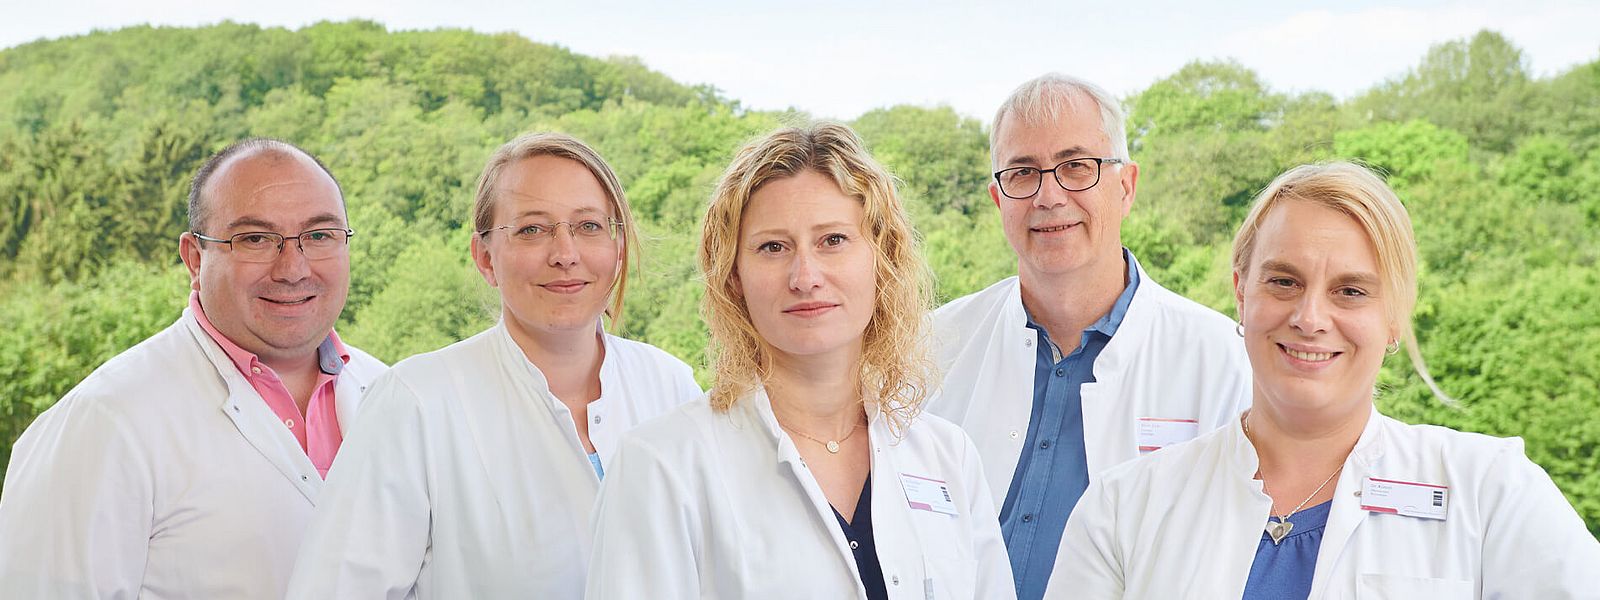 Fünf Mitarbeiter des Klinikums Idar-Oberstein stellen sich vor IO7.jpg